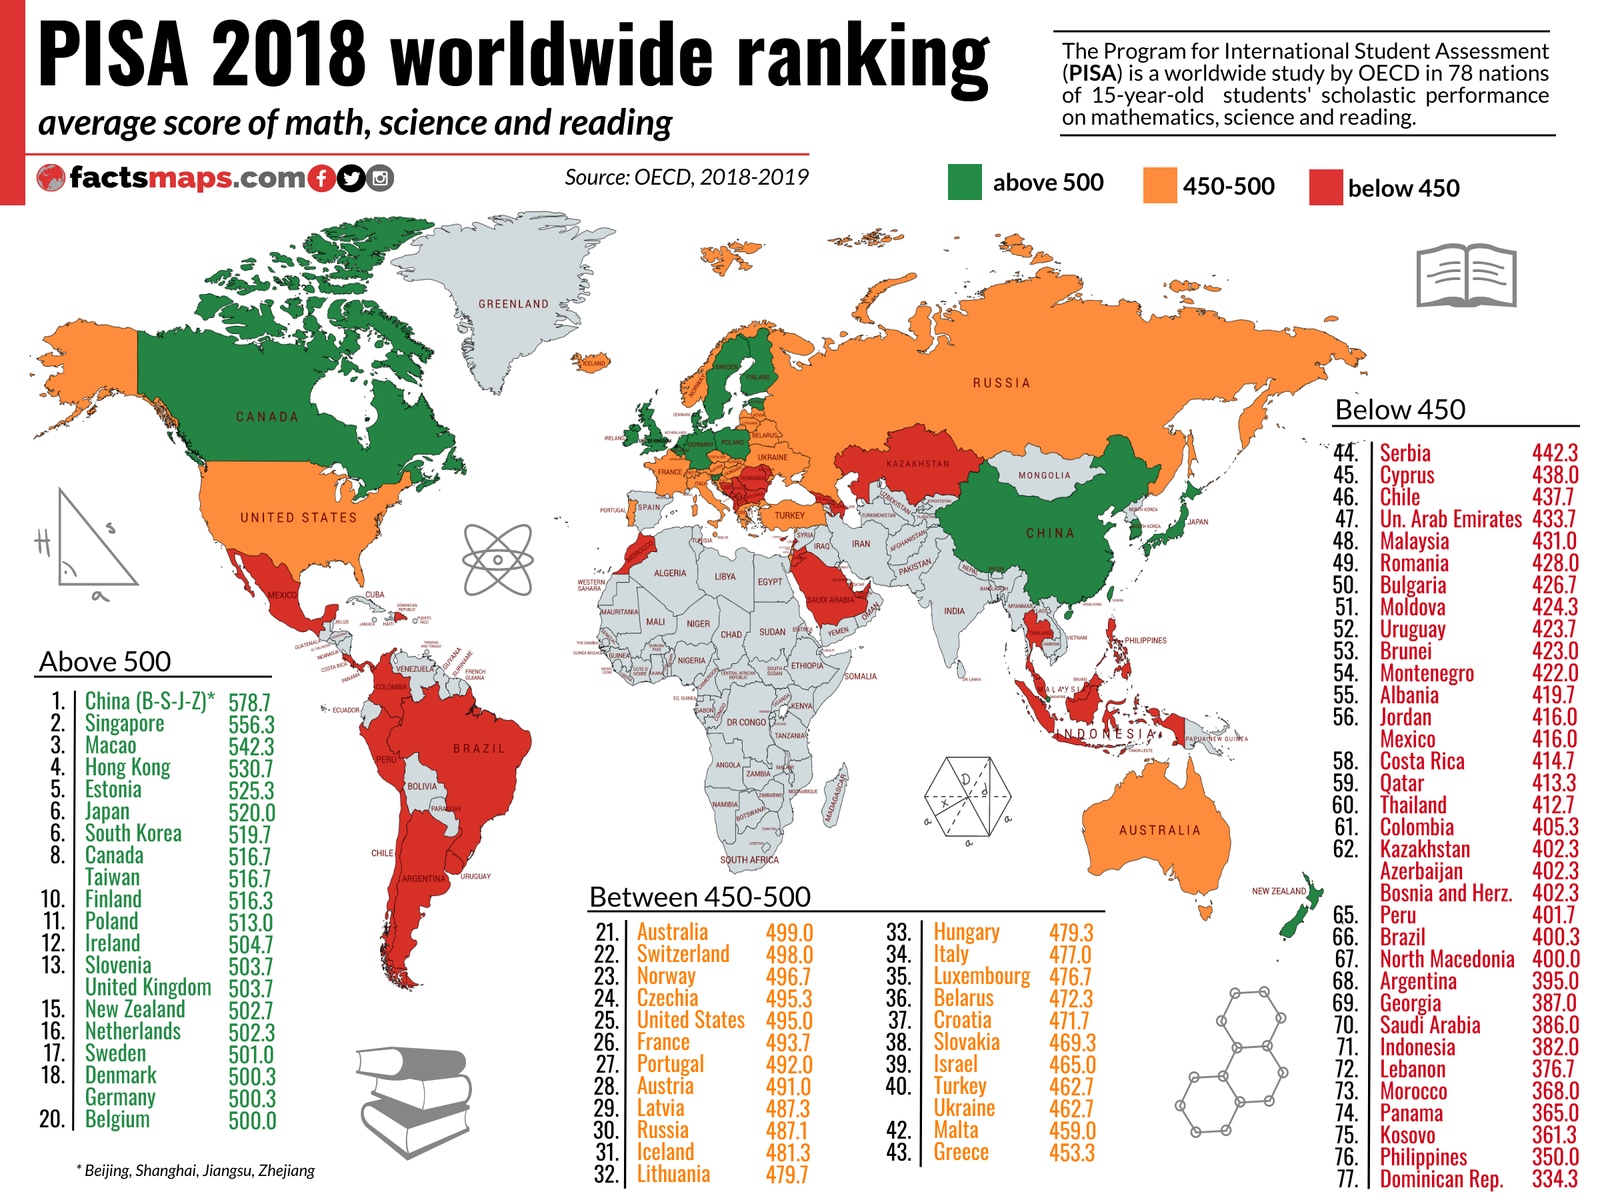 PISA 2018 Worldwide Ranking average score of mathematics, science and